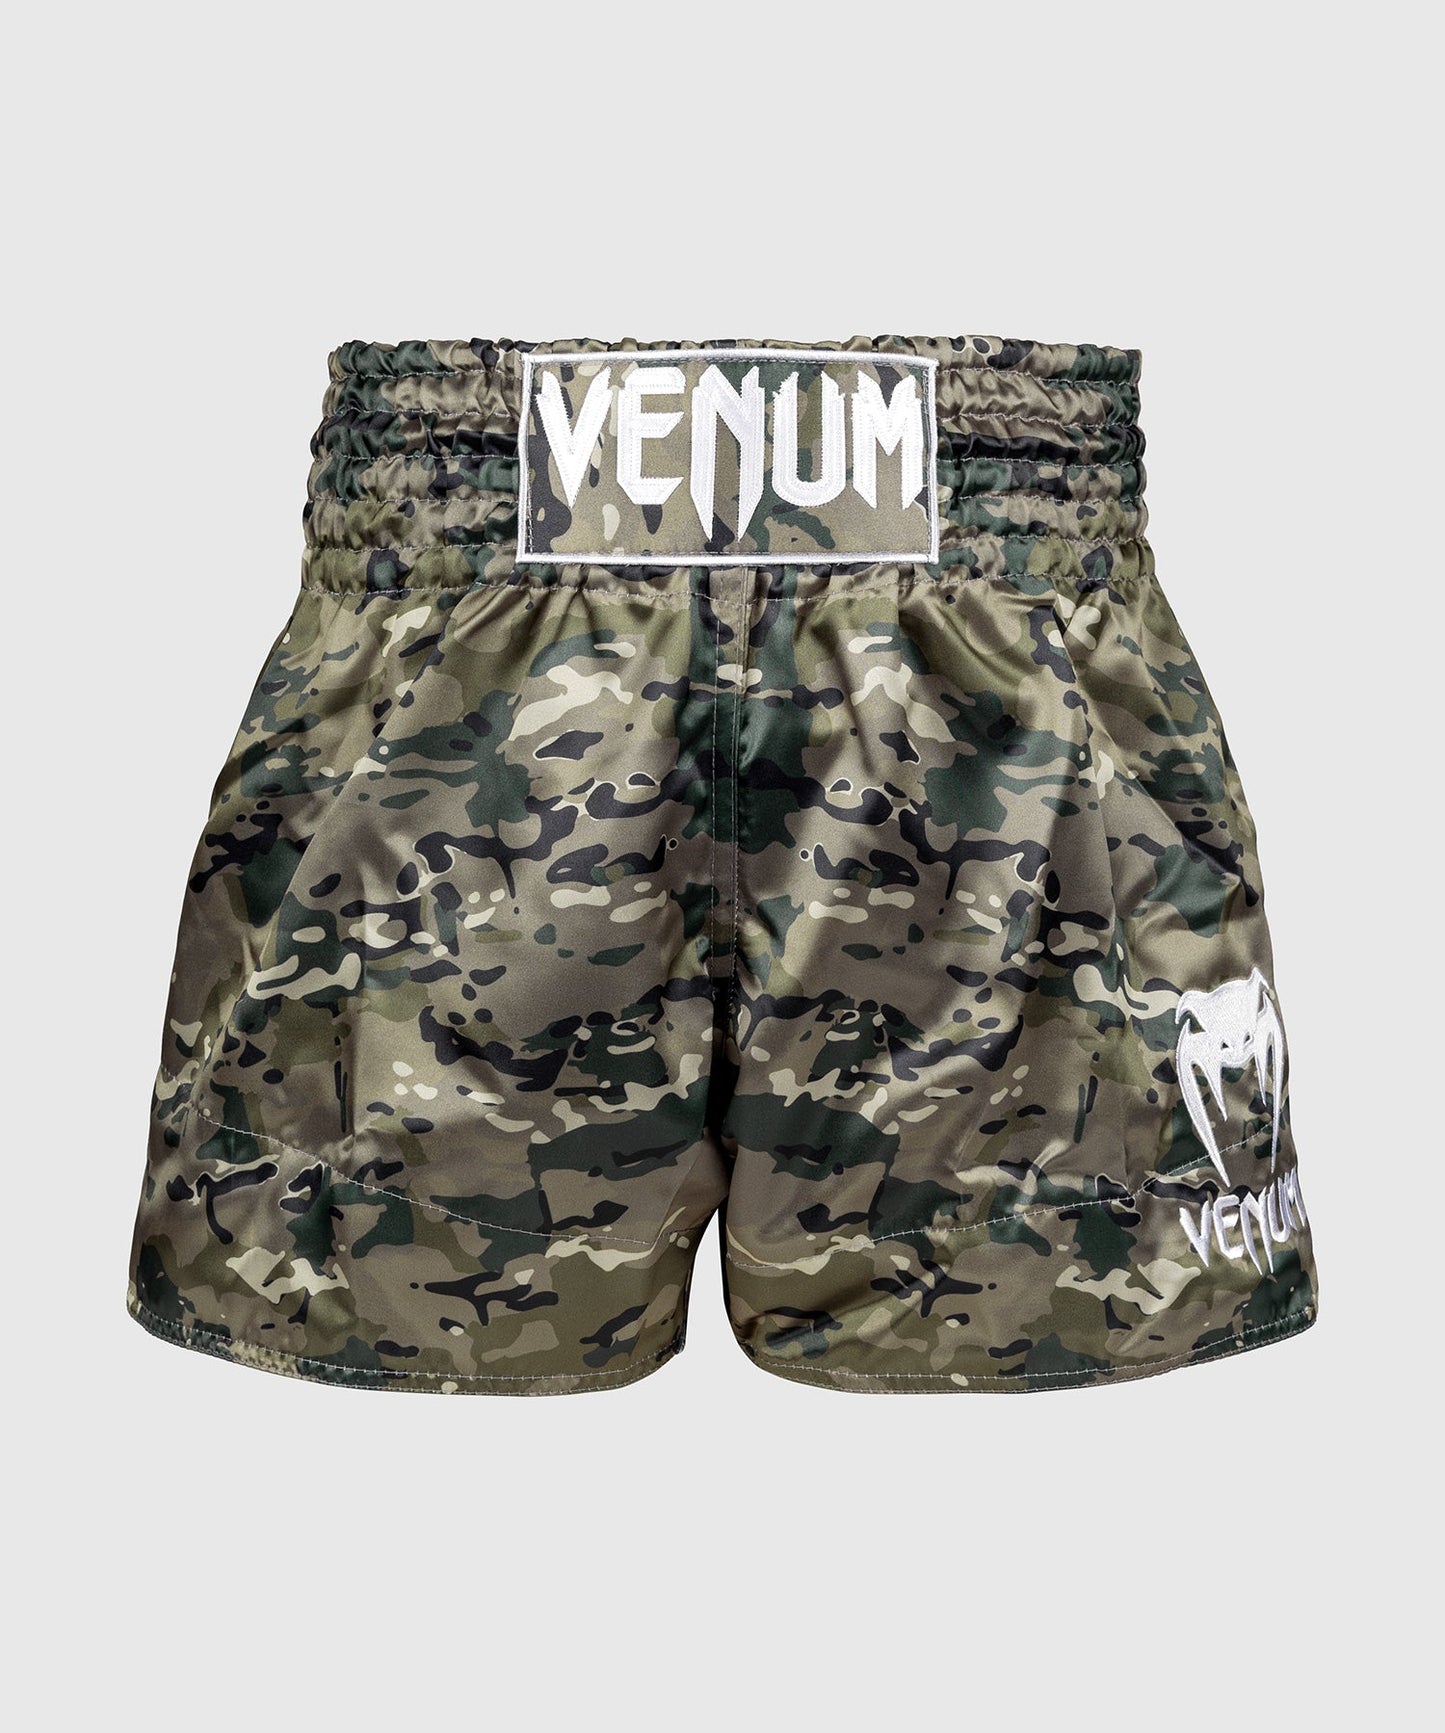 Venum Classic Pantalones cortos de Muay Thai - Desert Camo